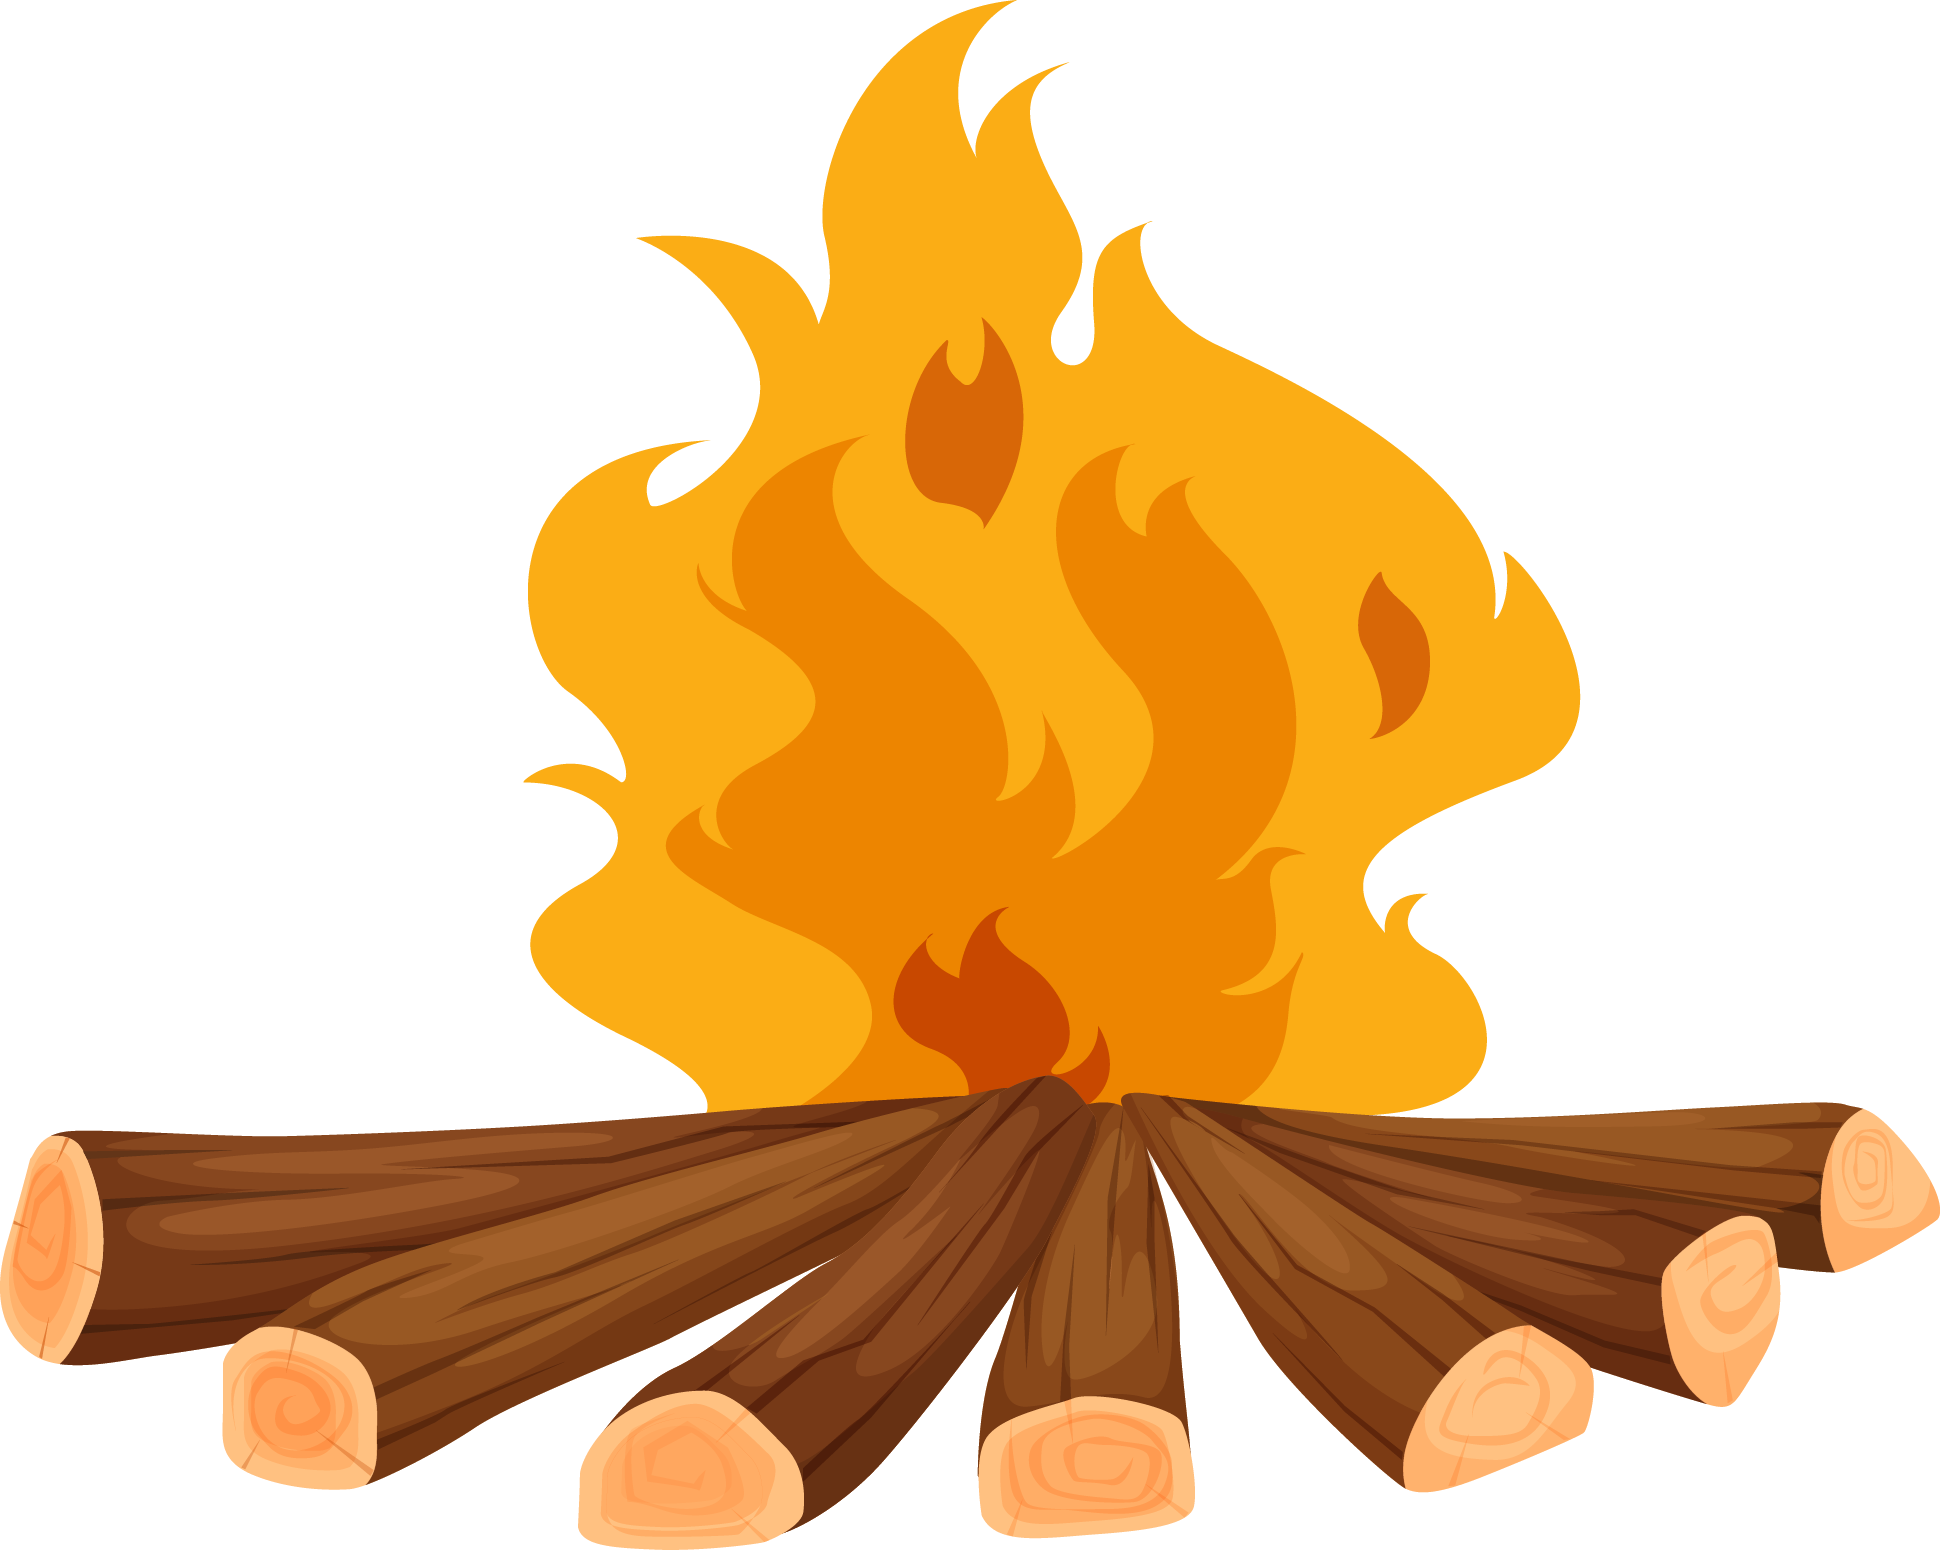 Camp Firewood Heap - Fire Wood Png (1940x1550)